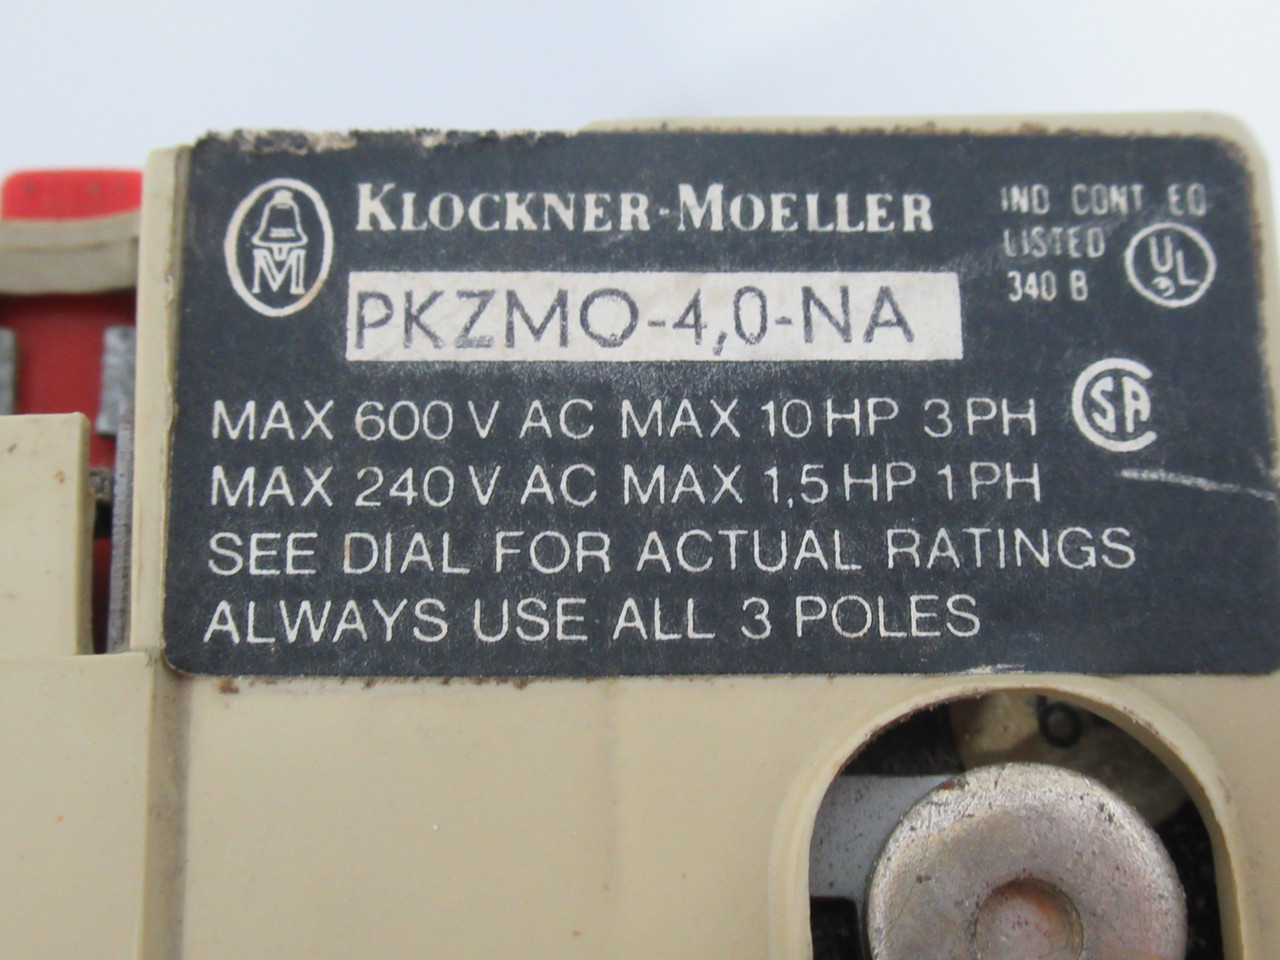 Klockner-Moeller PKZM0-4.0-NA Old Style Thermal Magnetic Circuit Breaker USED